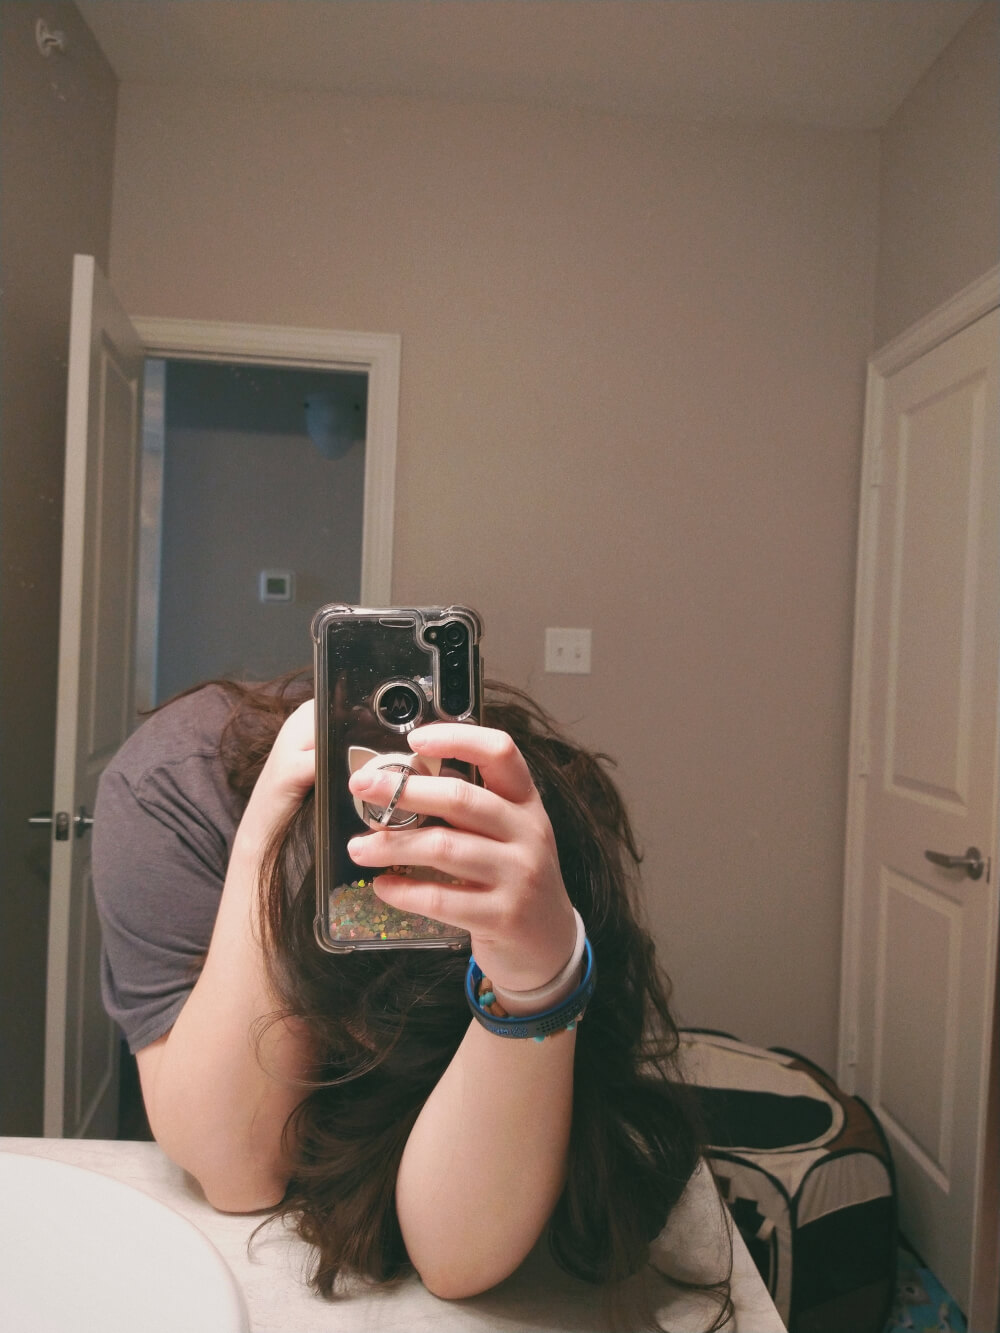 Bathroom mirror selfie, head down, phone up